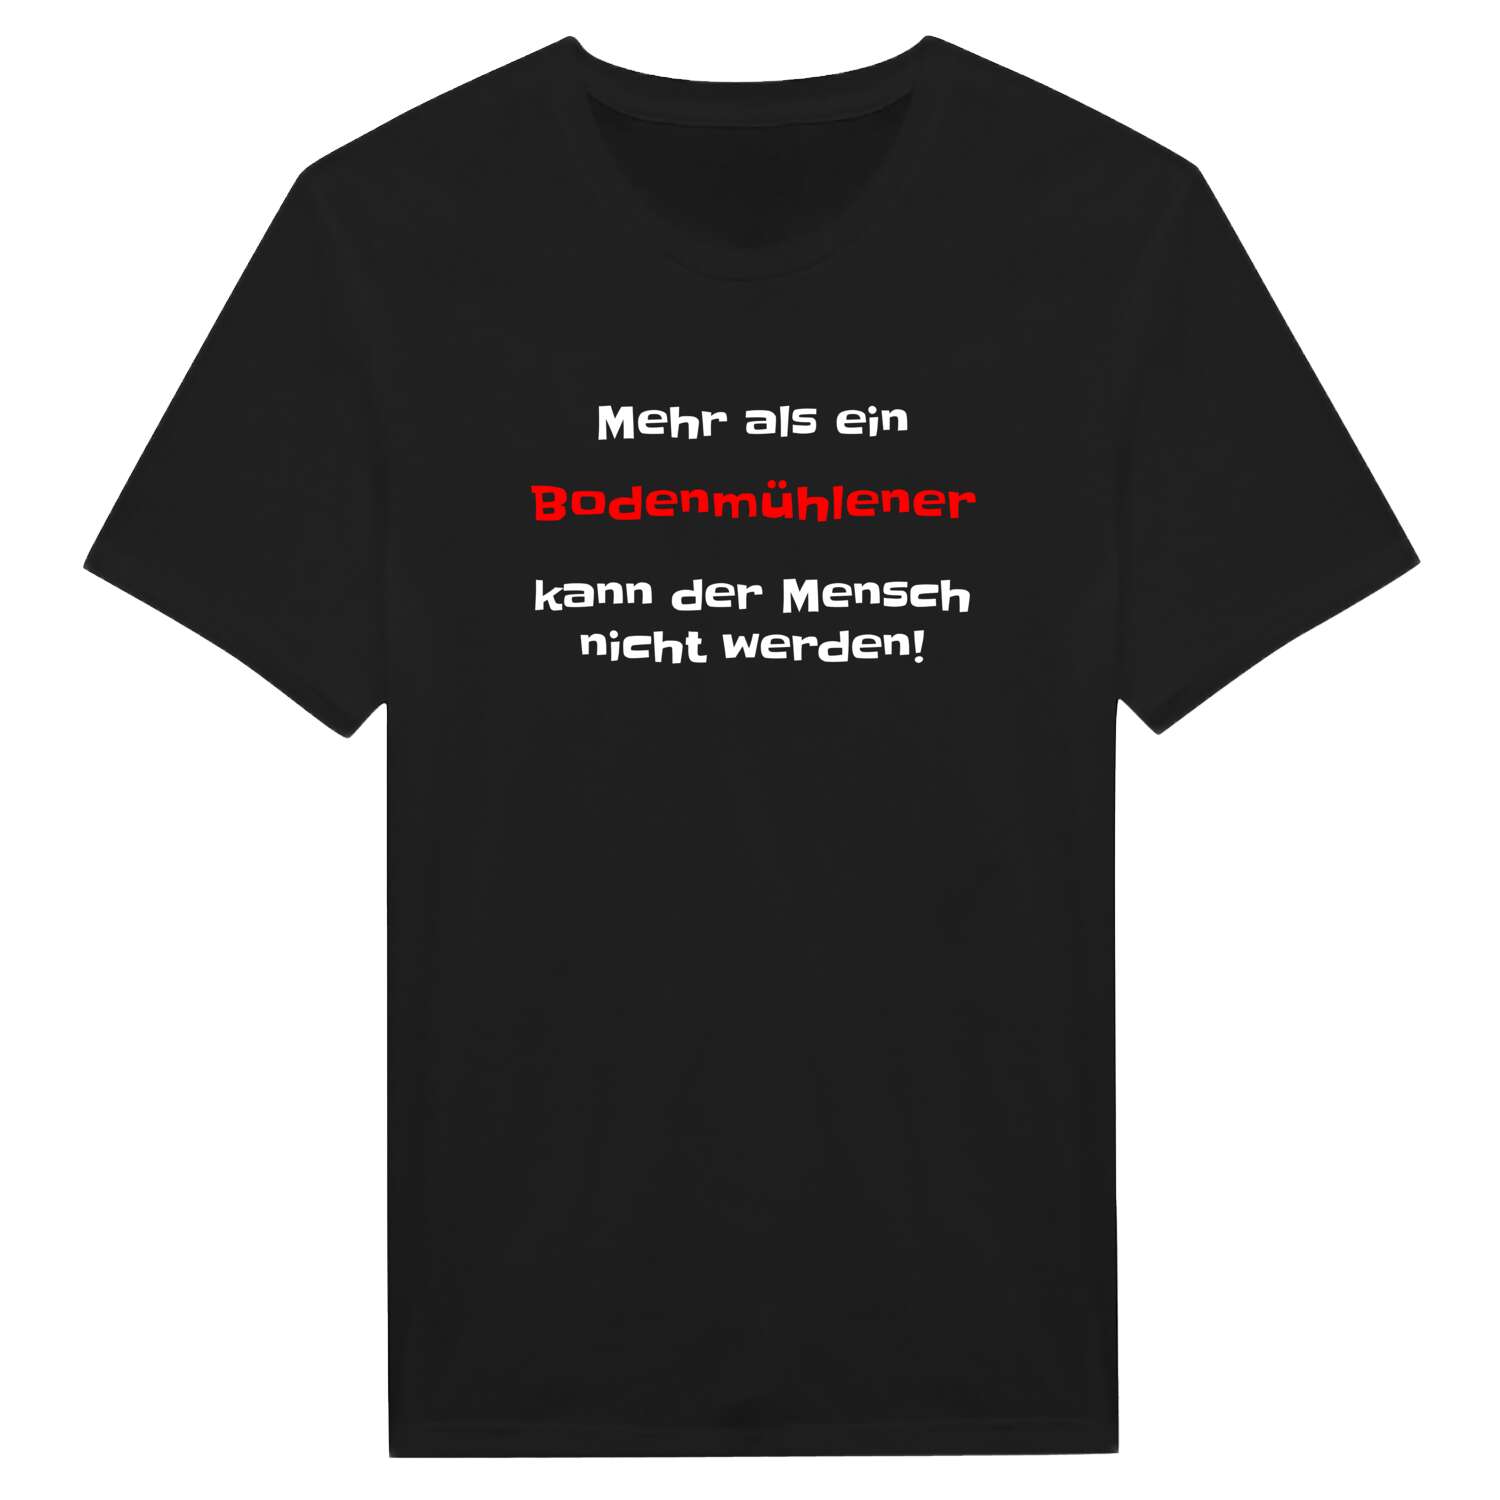 Bodenmühle T-Shirt »Mehr als ein«